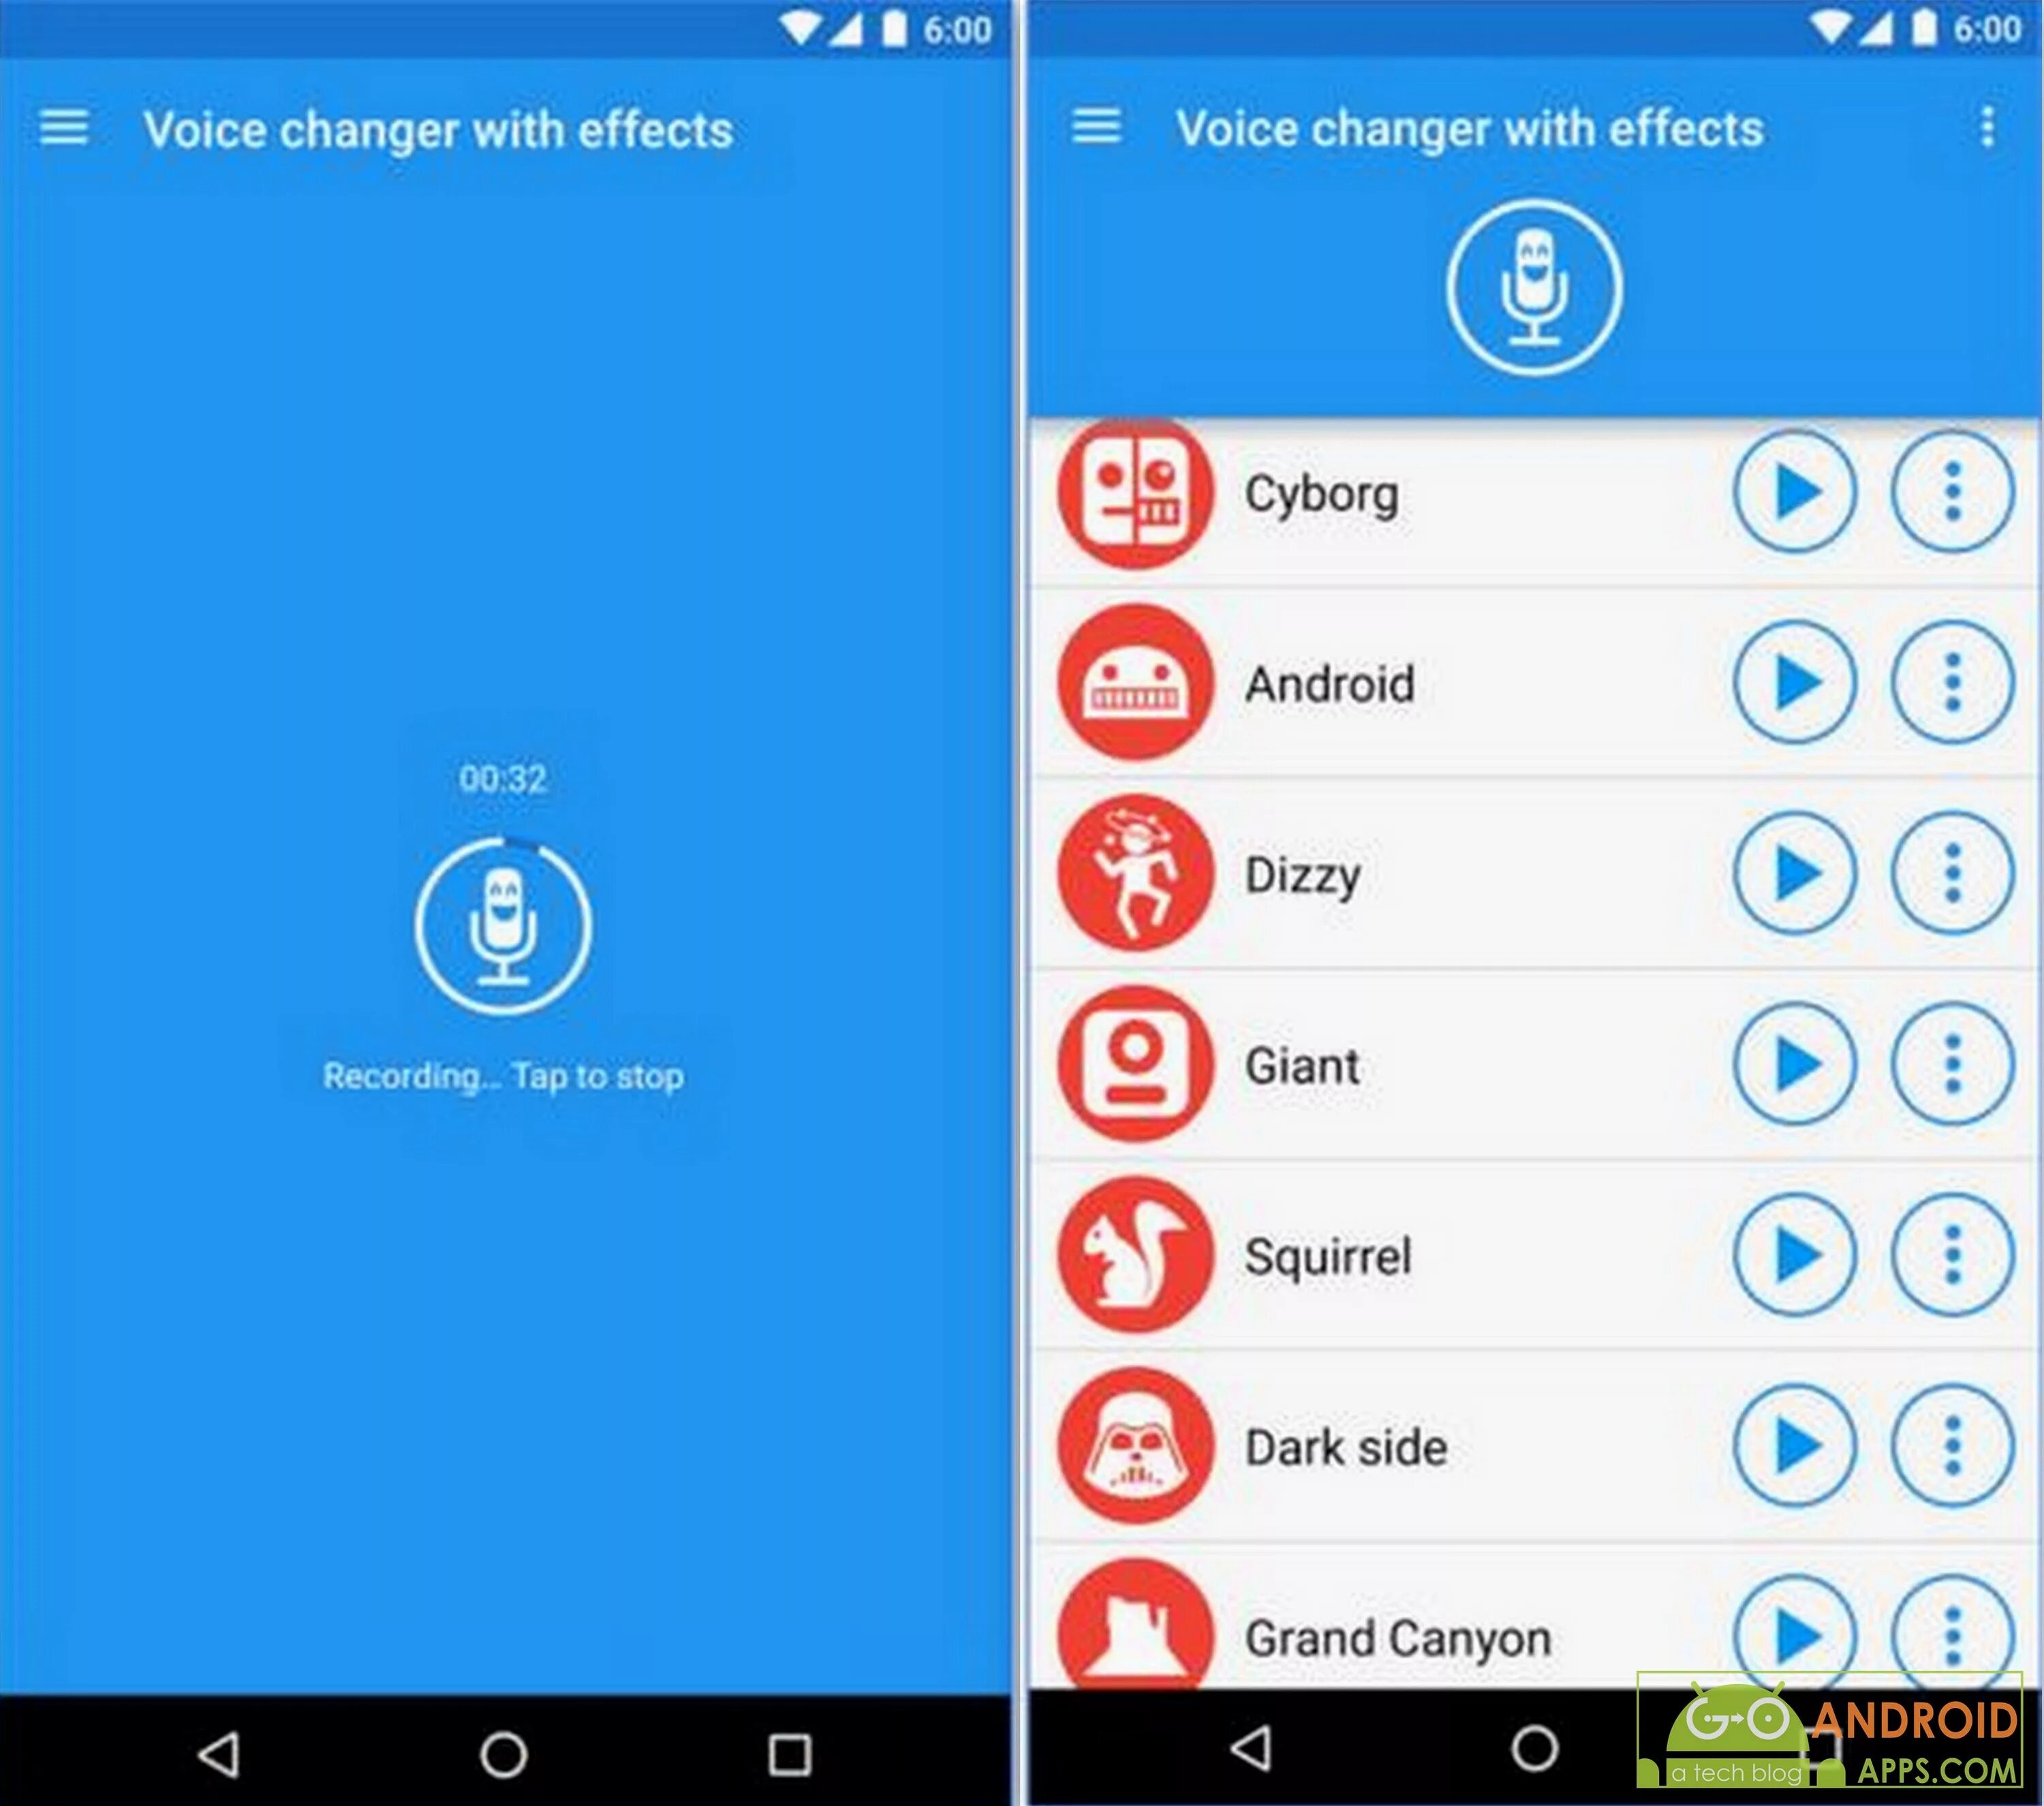 Voice changer русский. Приложение Voice Changer для андроид. Voice Changer with Effects. Voice Changer с эффектами. Преобразователь голоса с эффектами.